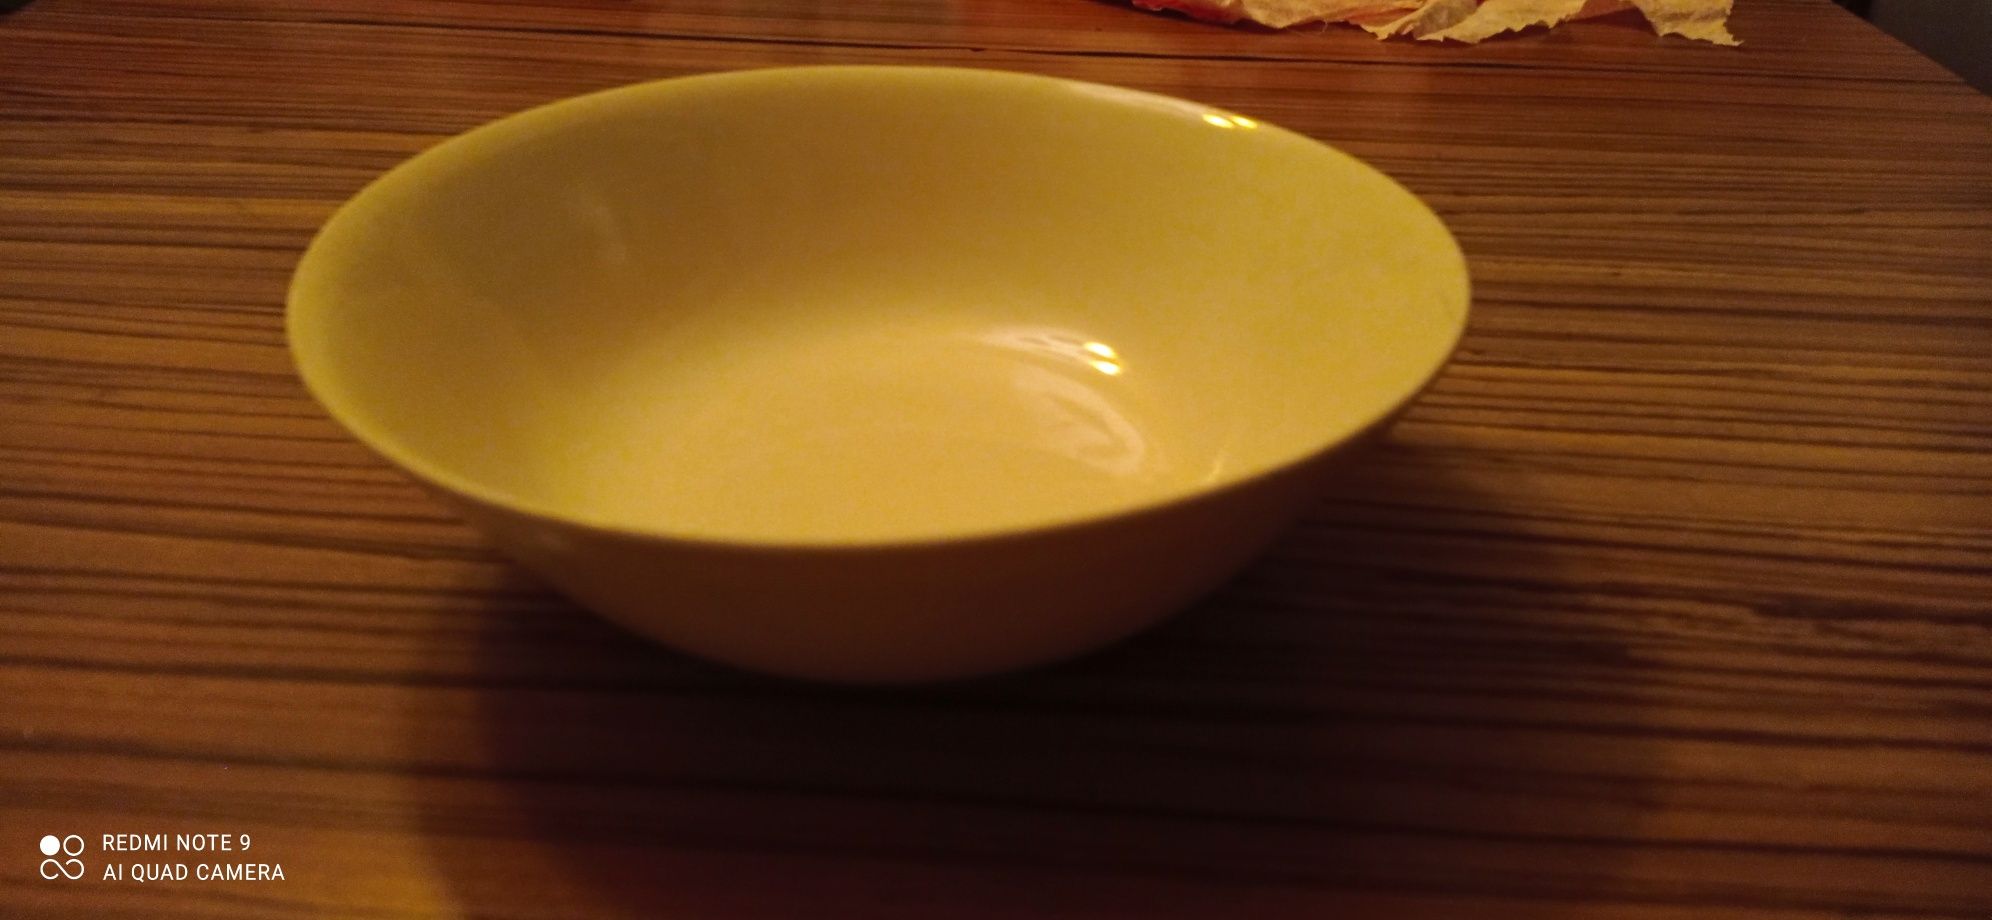 Salaterka talerz patera średnica 24 cm